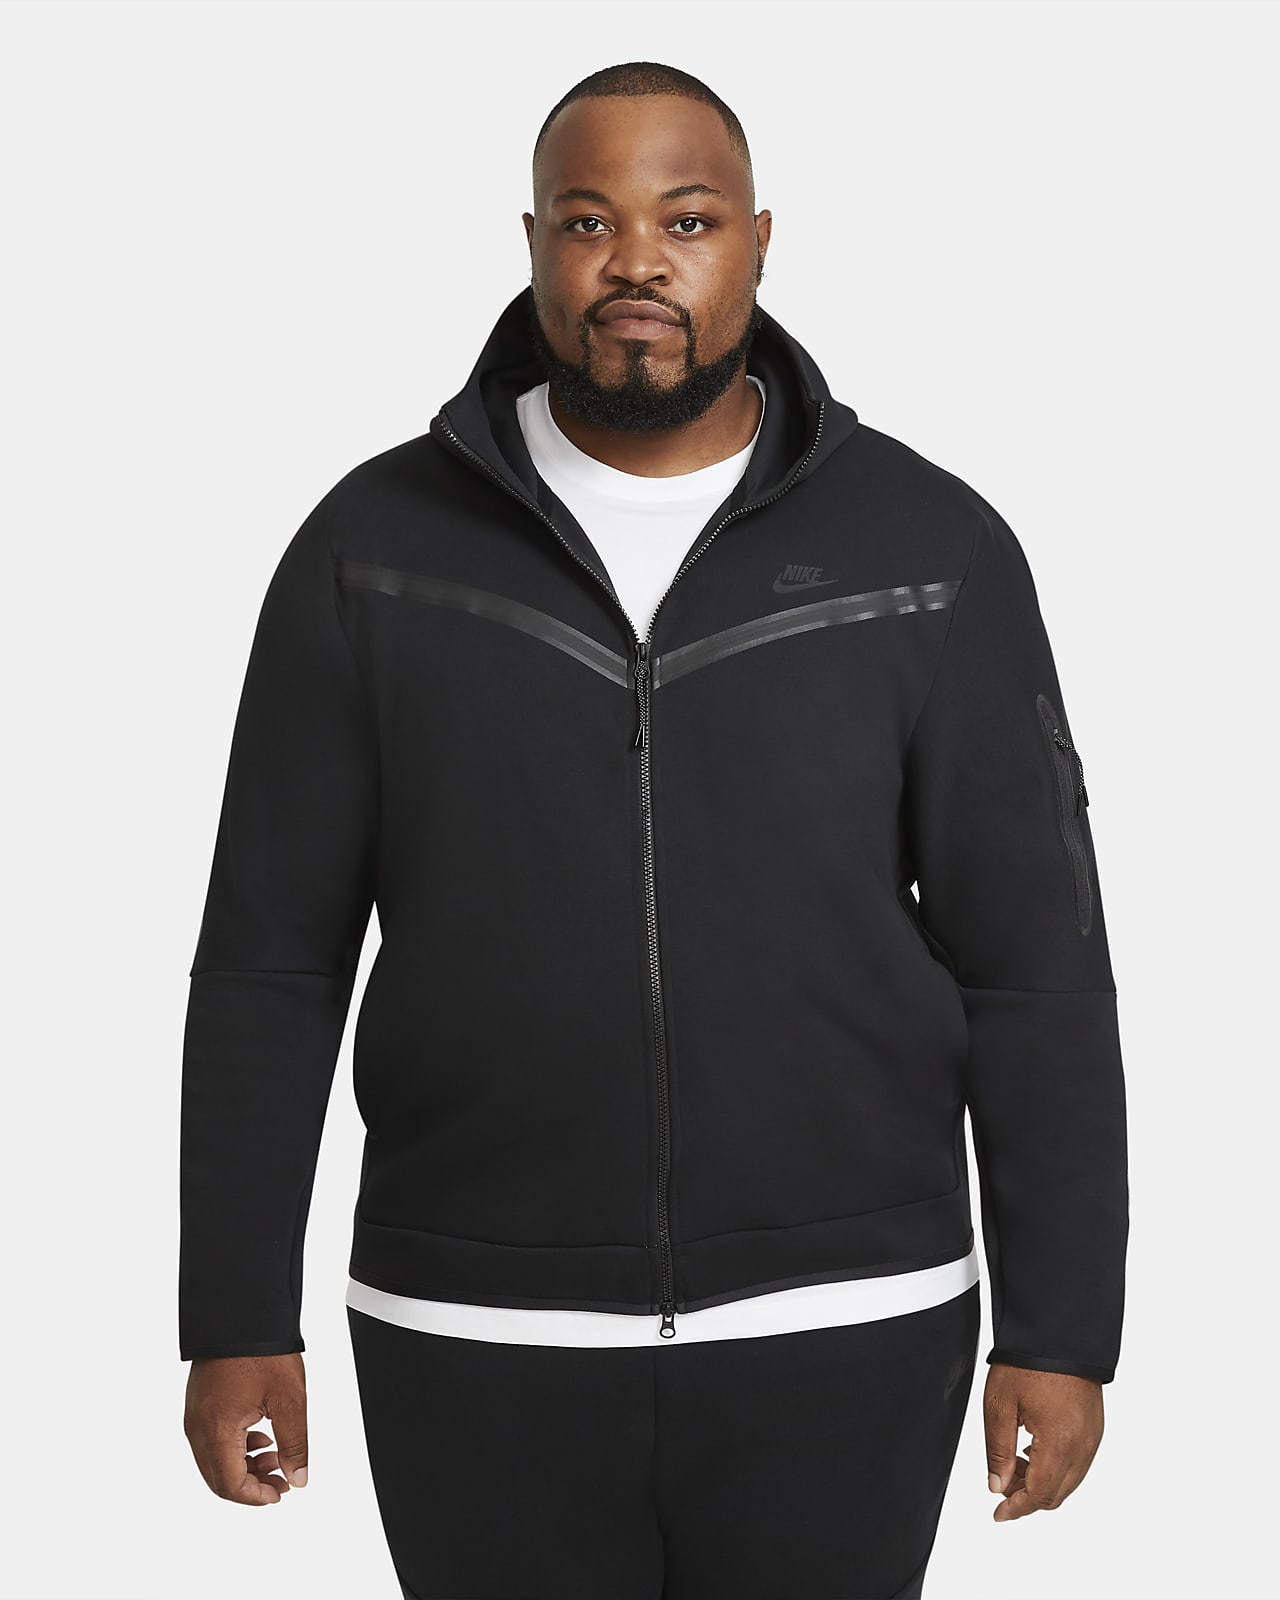 black nike fleece hoodie